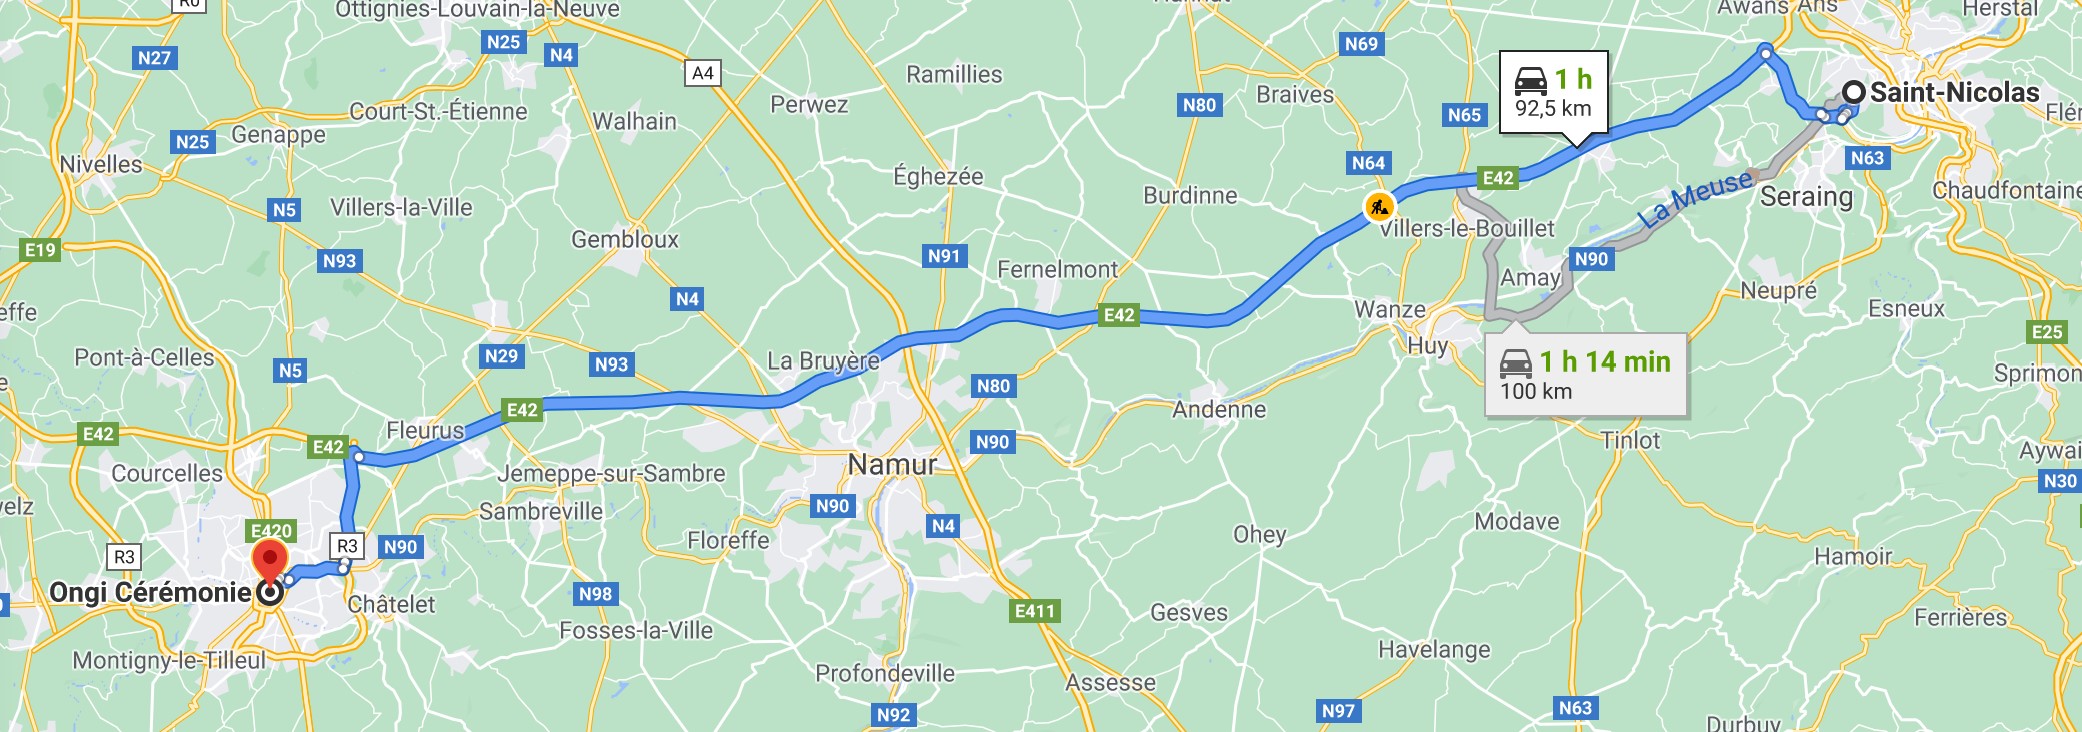 Itinéraire de Saint-Nicolas à Ongi-ceremonie